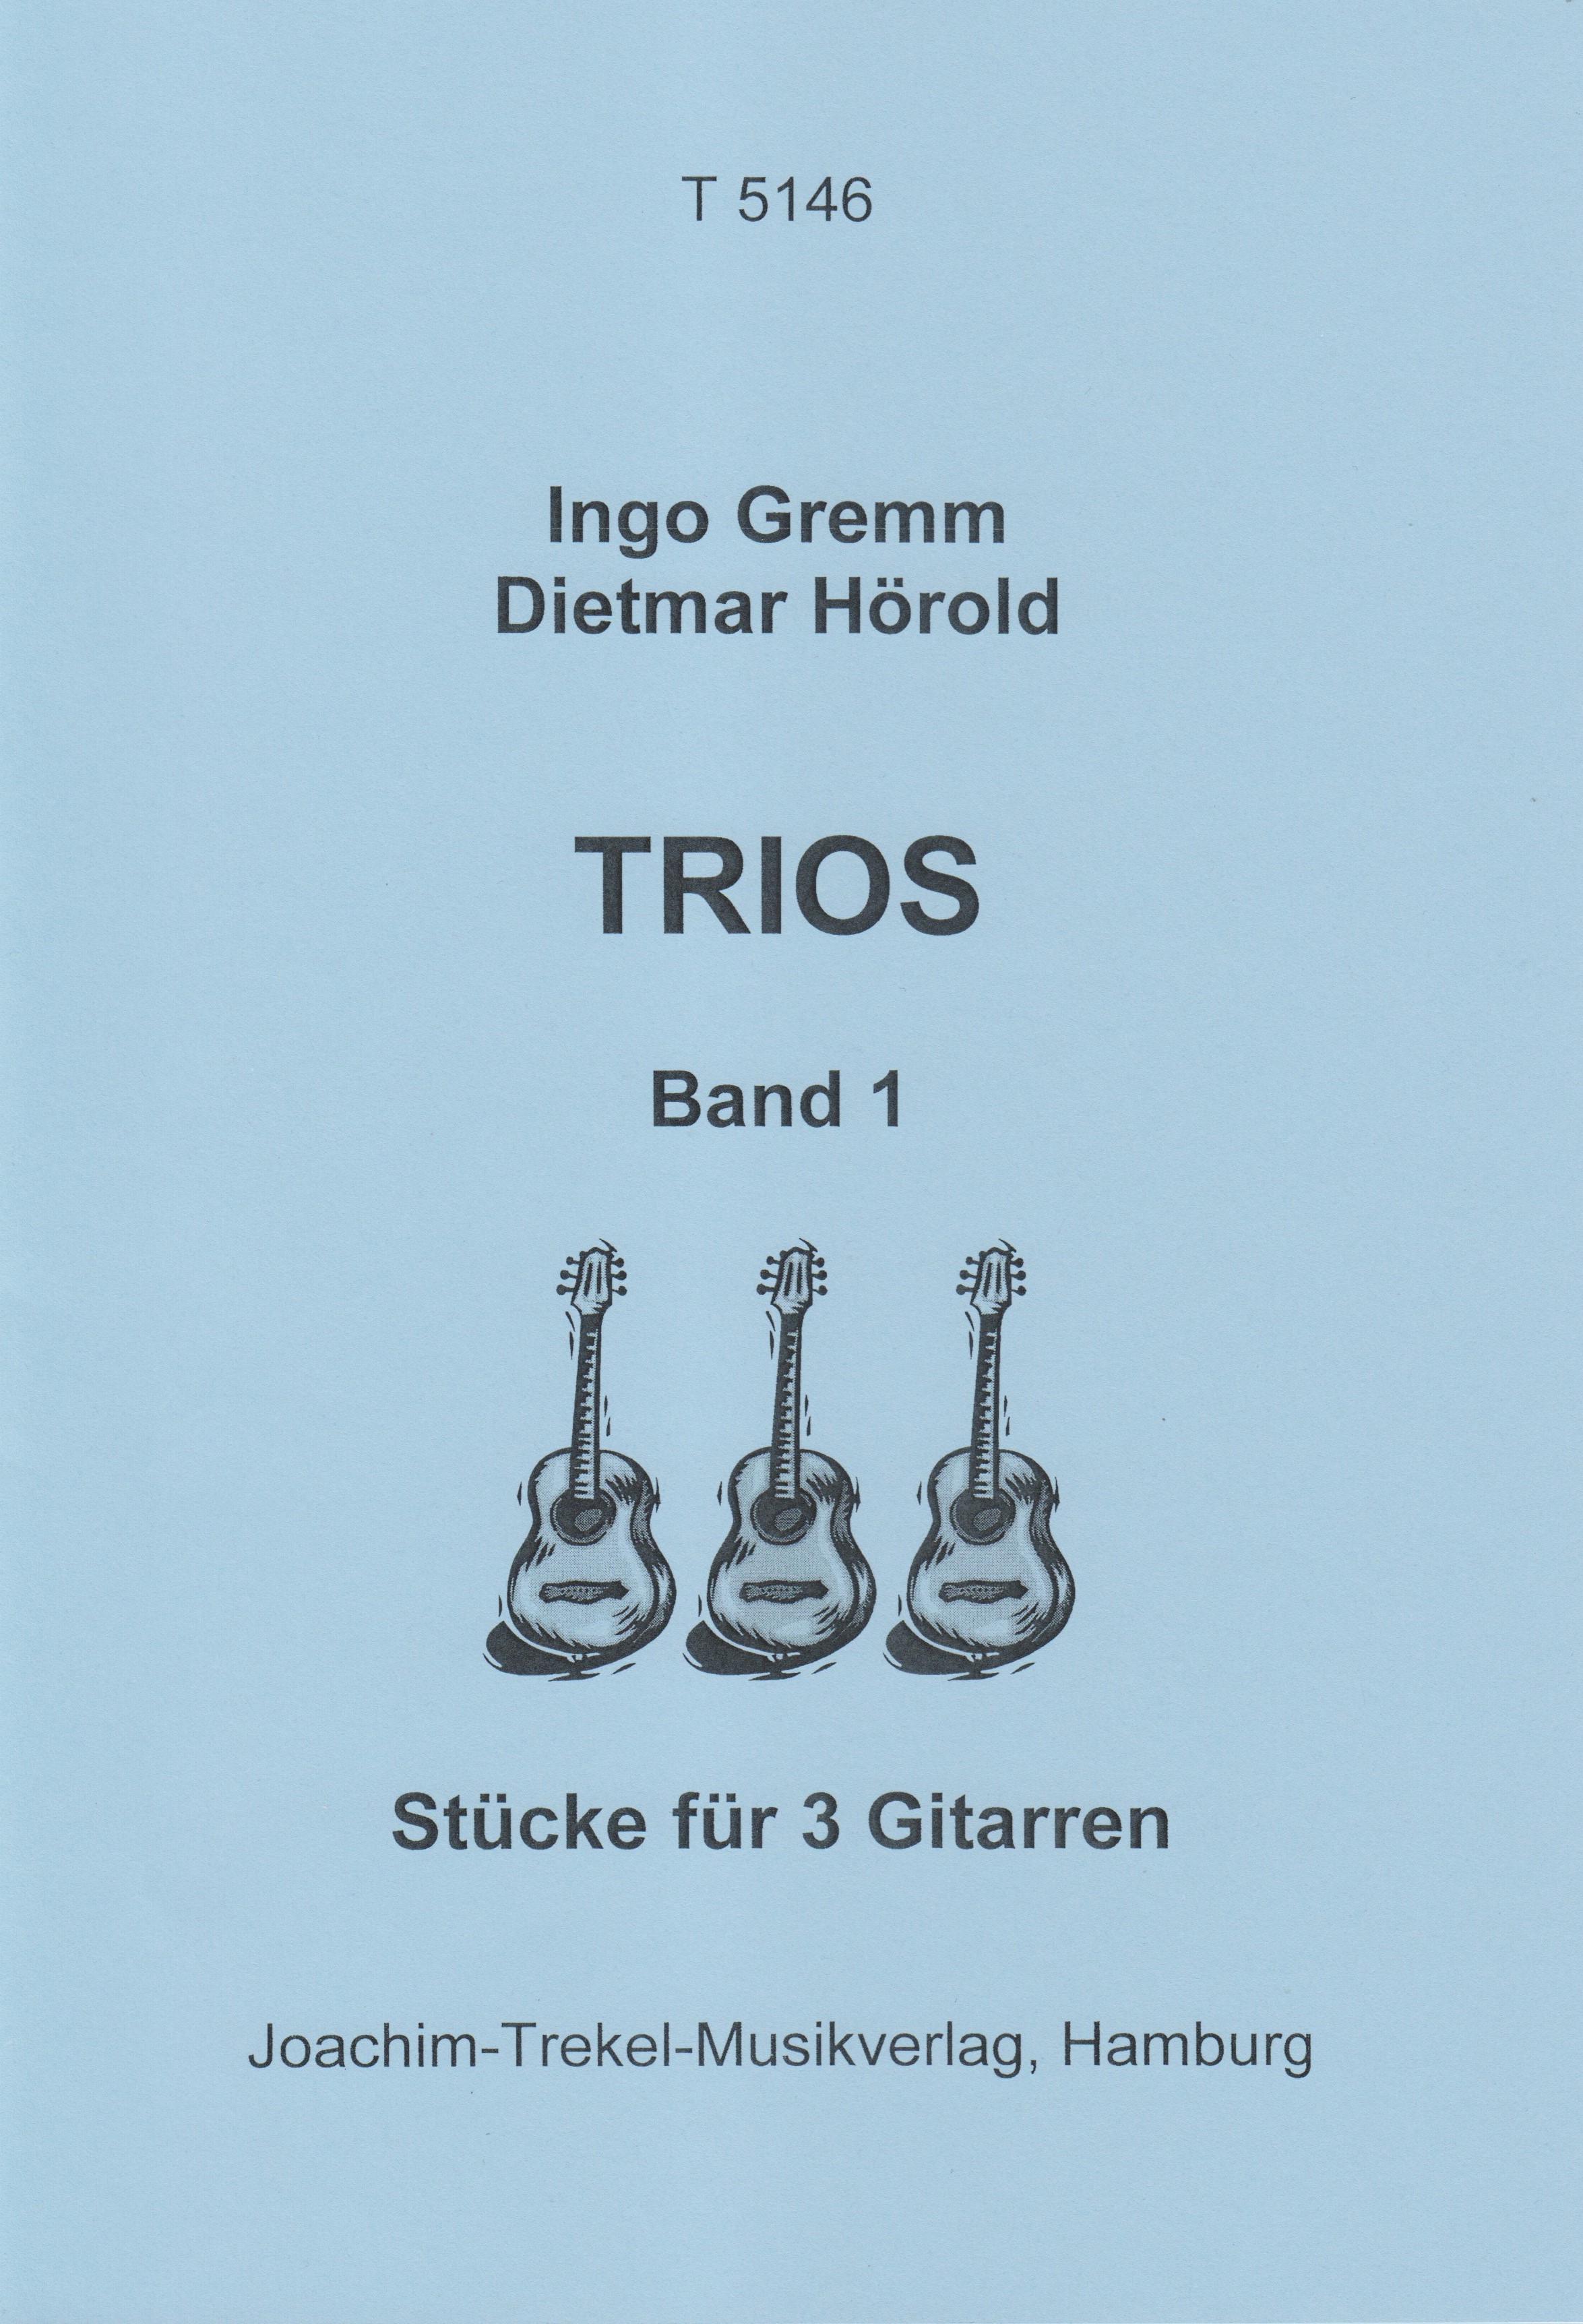 Trios Band 1